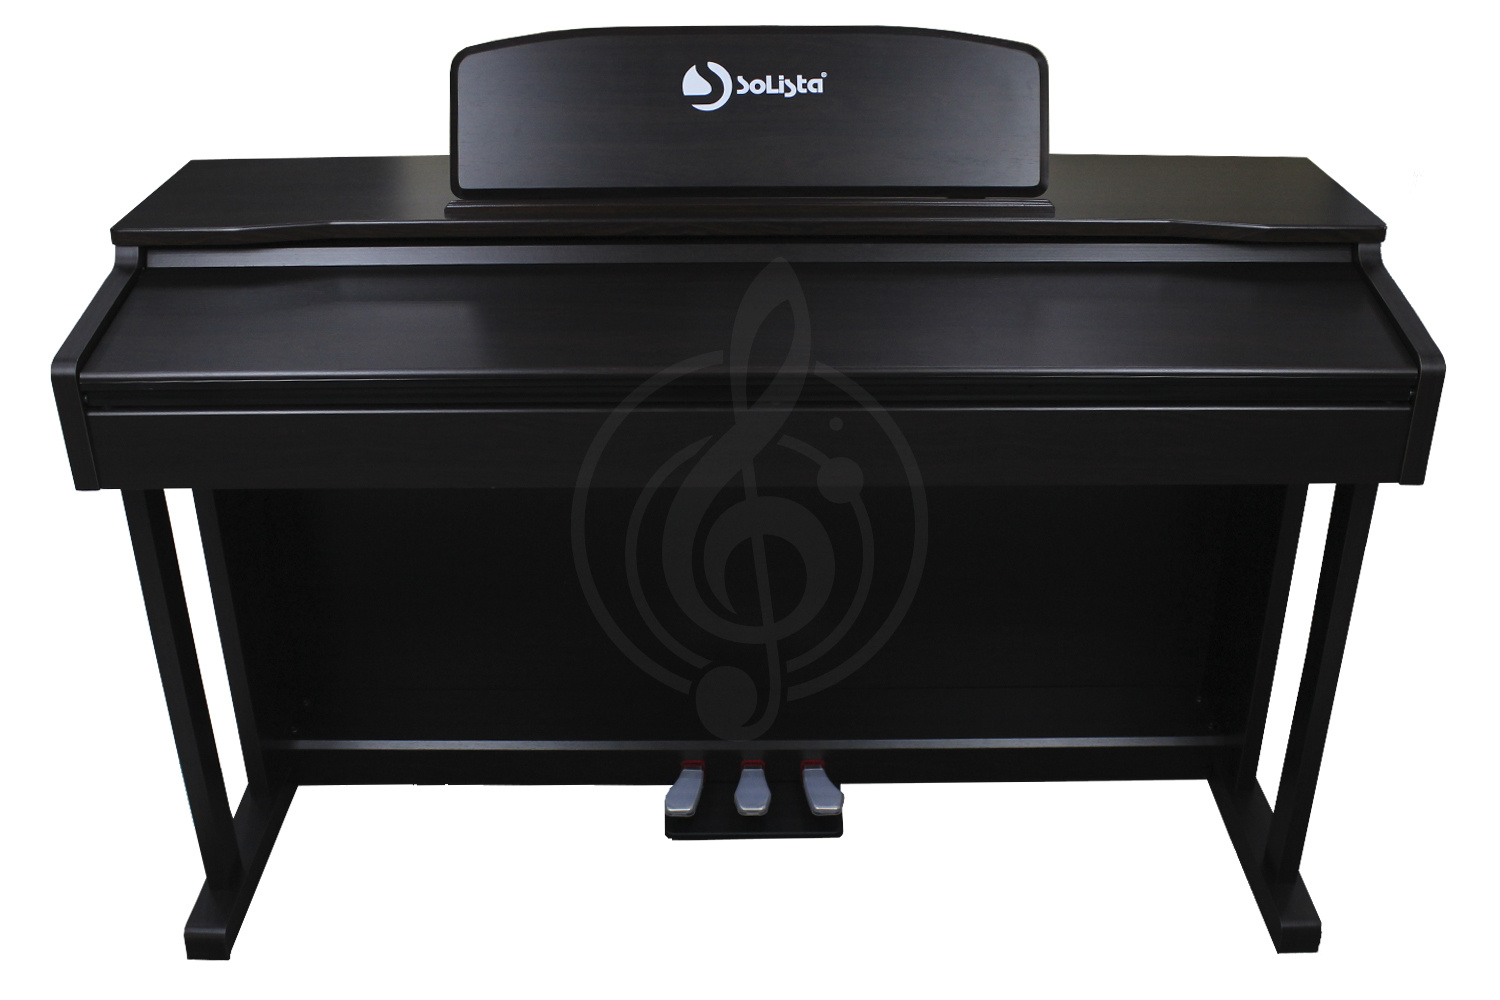 Цифровое пианино Цифровые пианино Solista SOLISTA DP801 2 - Цифровое пианино DP801 2 - фото 2